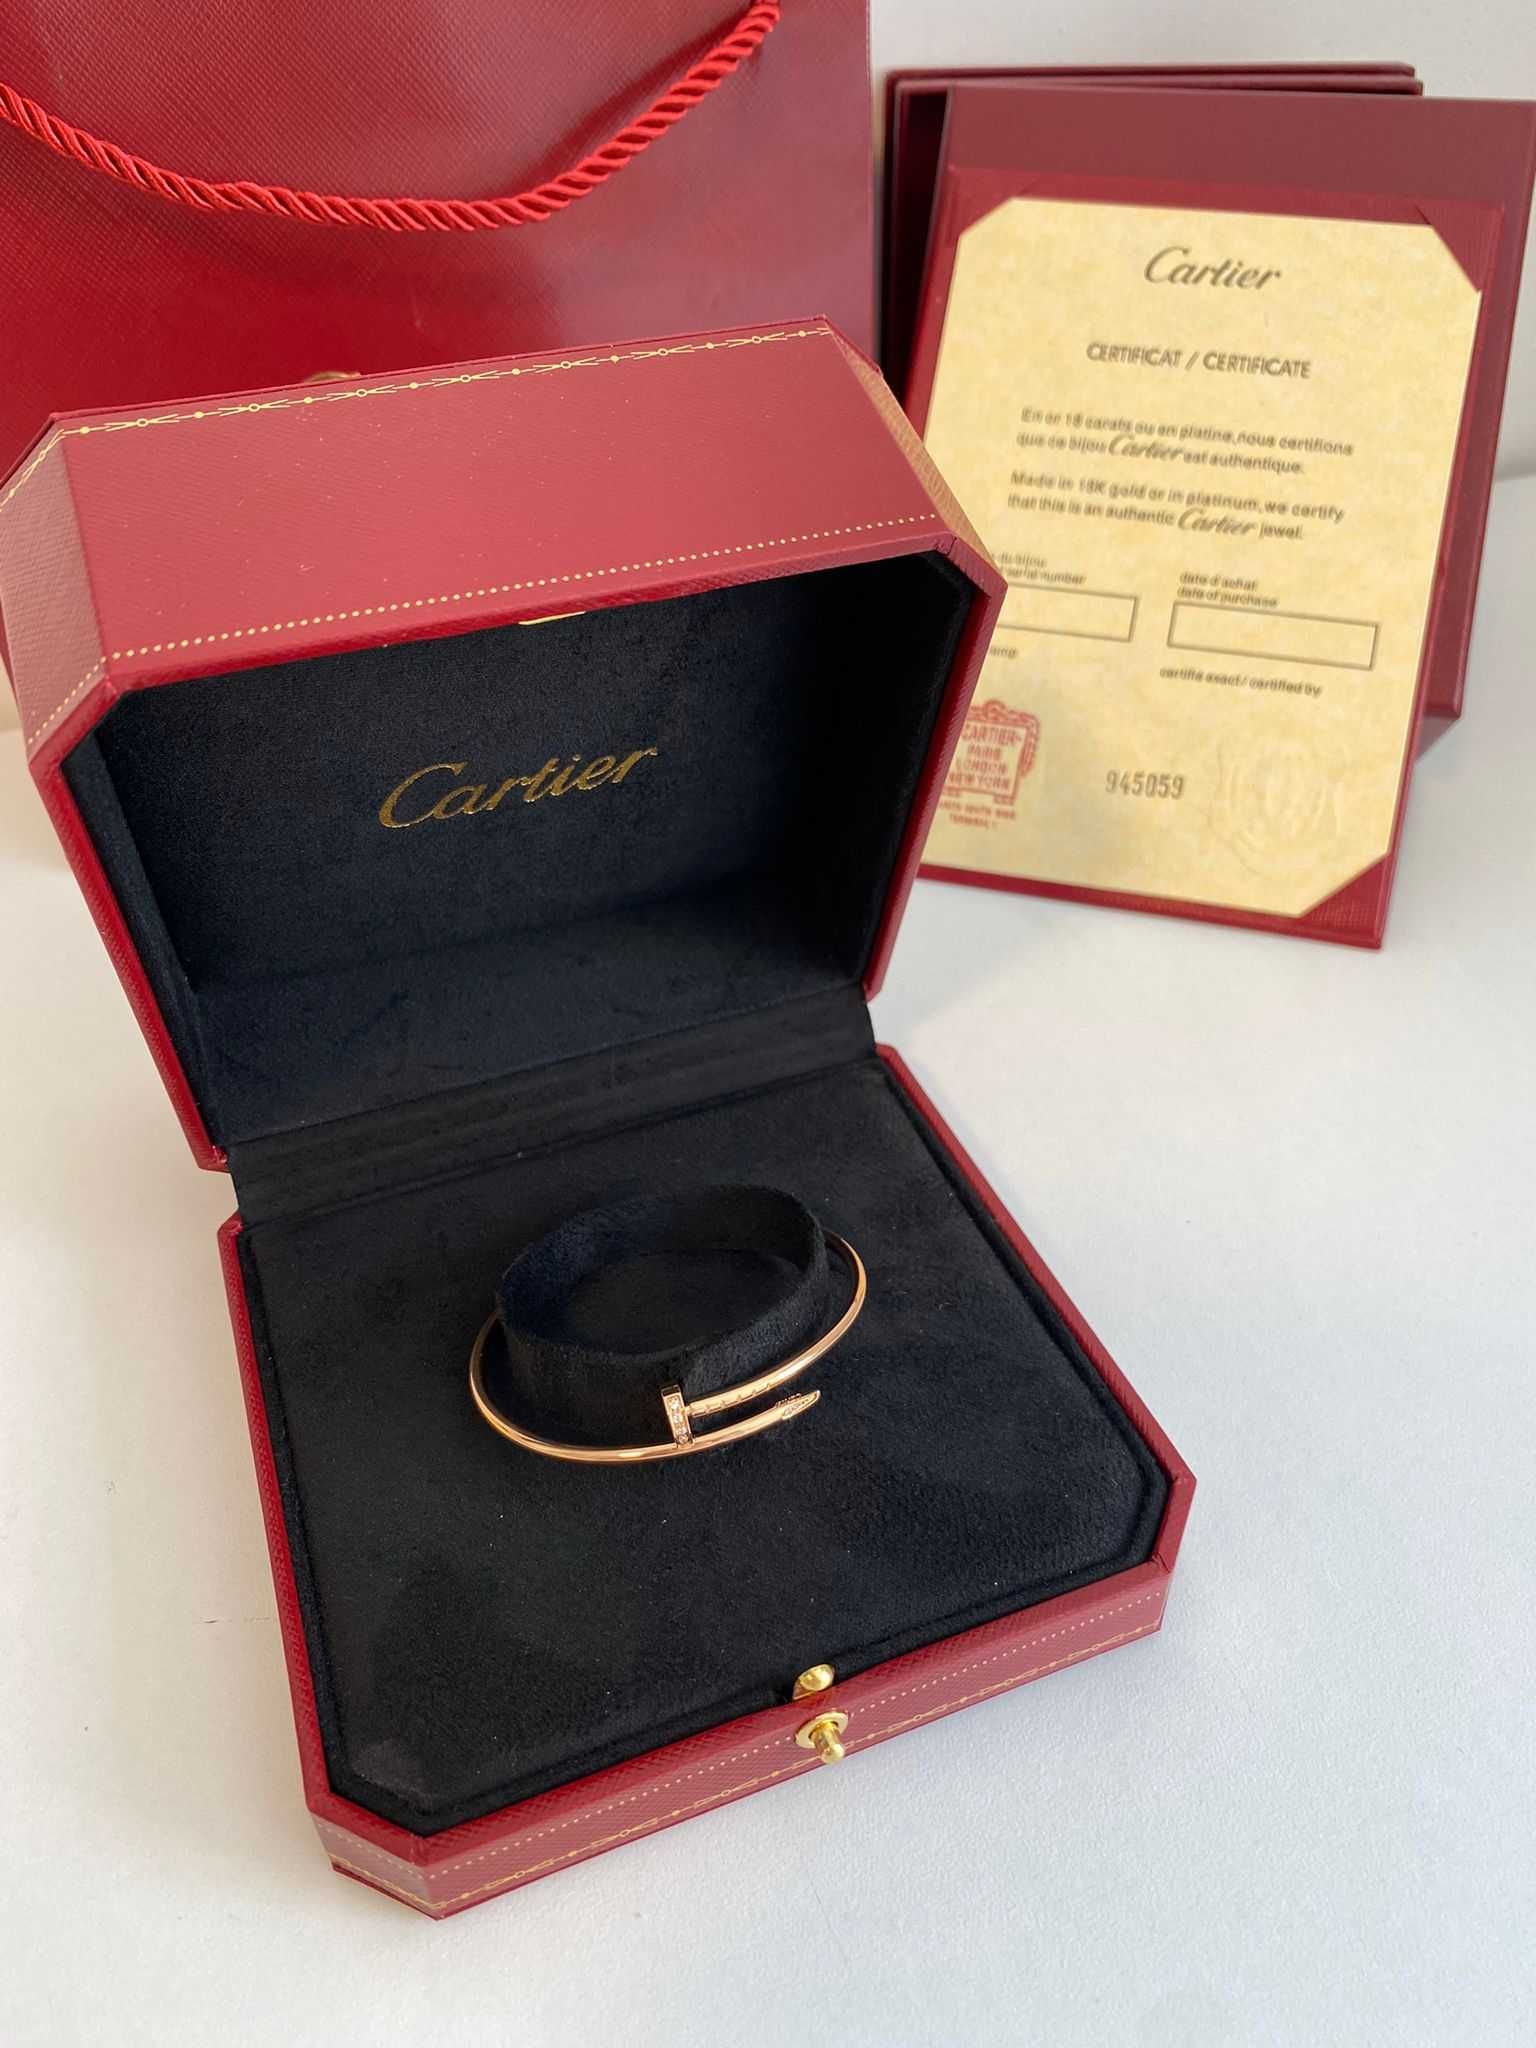 Brățară Cartier Juste un Clou Small 15 Rose Gold 24K diamond cu cutie